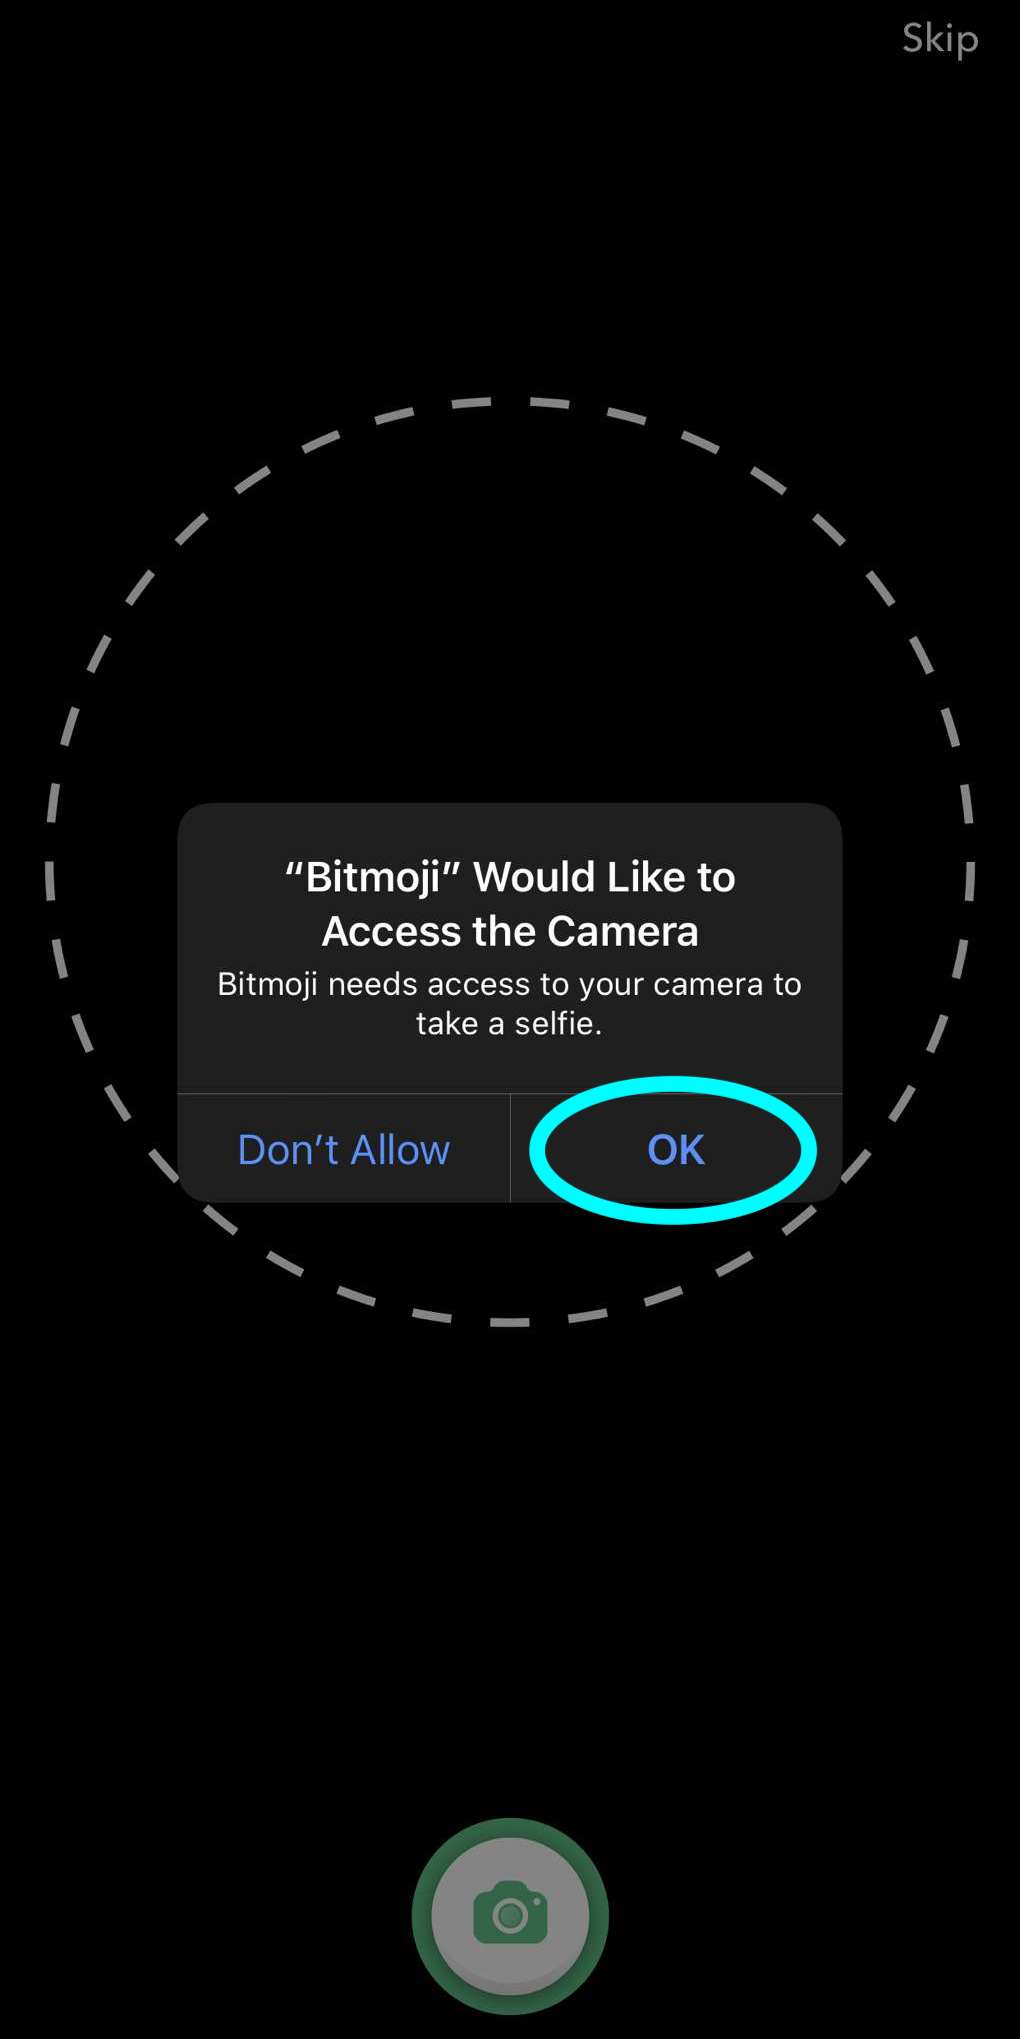 uma janela pop-up para permitir que Bitmoji acesse a câmera, o botão OK para permitir o acesso está destacado